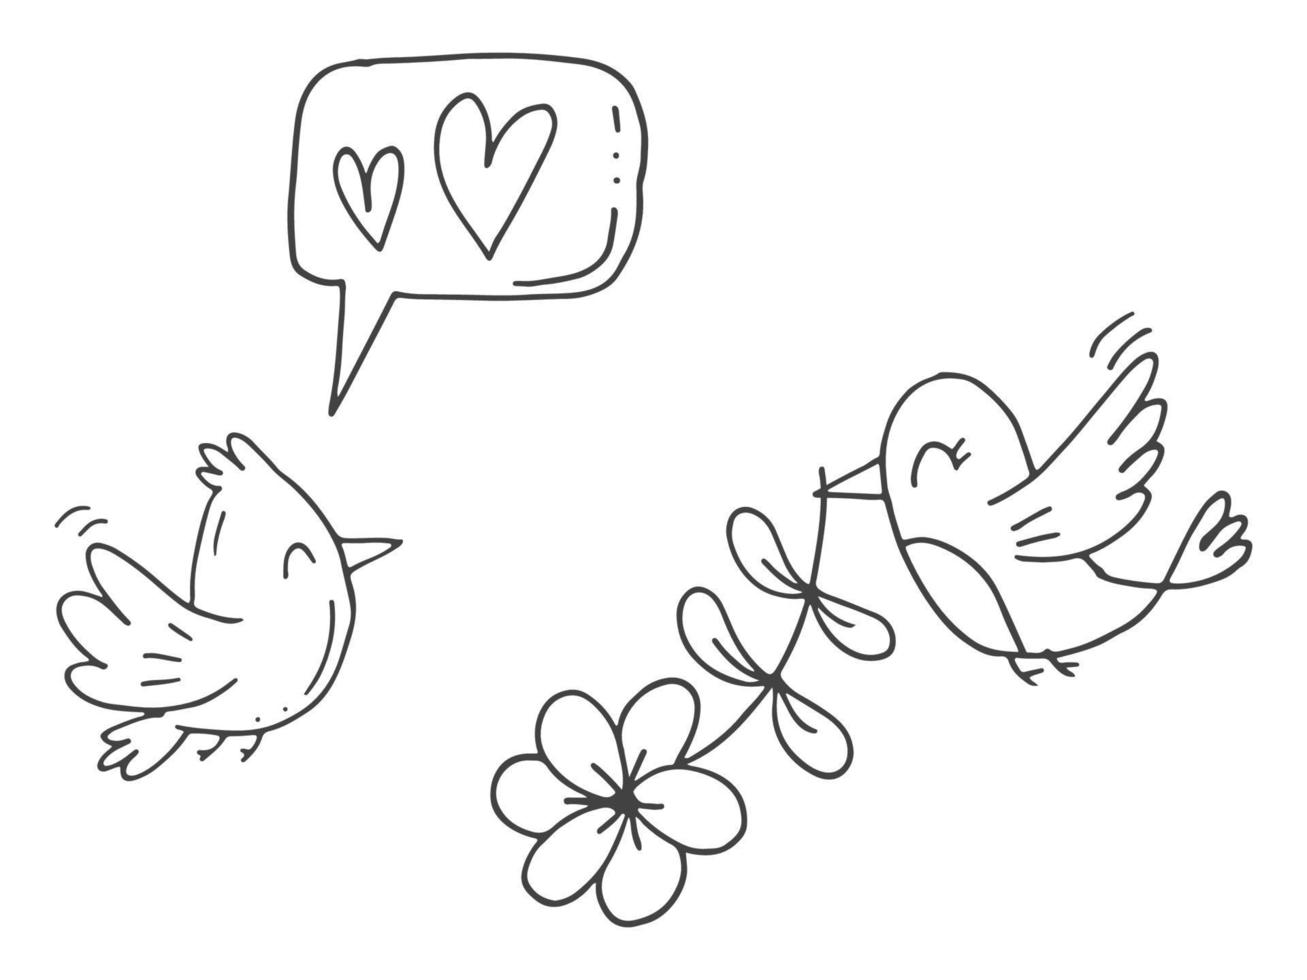 ensemble d'éléments de doodle mignons dessinés à la main sur l'amour. autocollants de message pour les applications. icônes pour la saint valentin, les événements romantiques et le mariage. un oiseau chante une chanson d'amour et son amant avec une fleur. vecteur